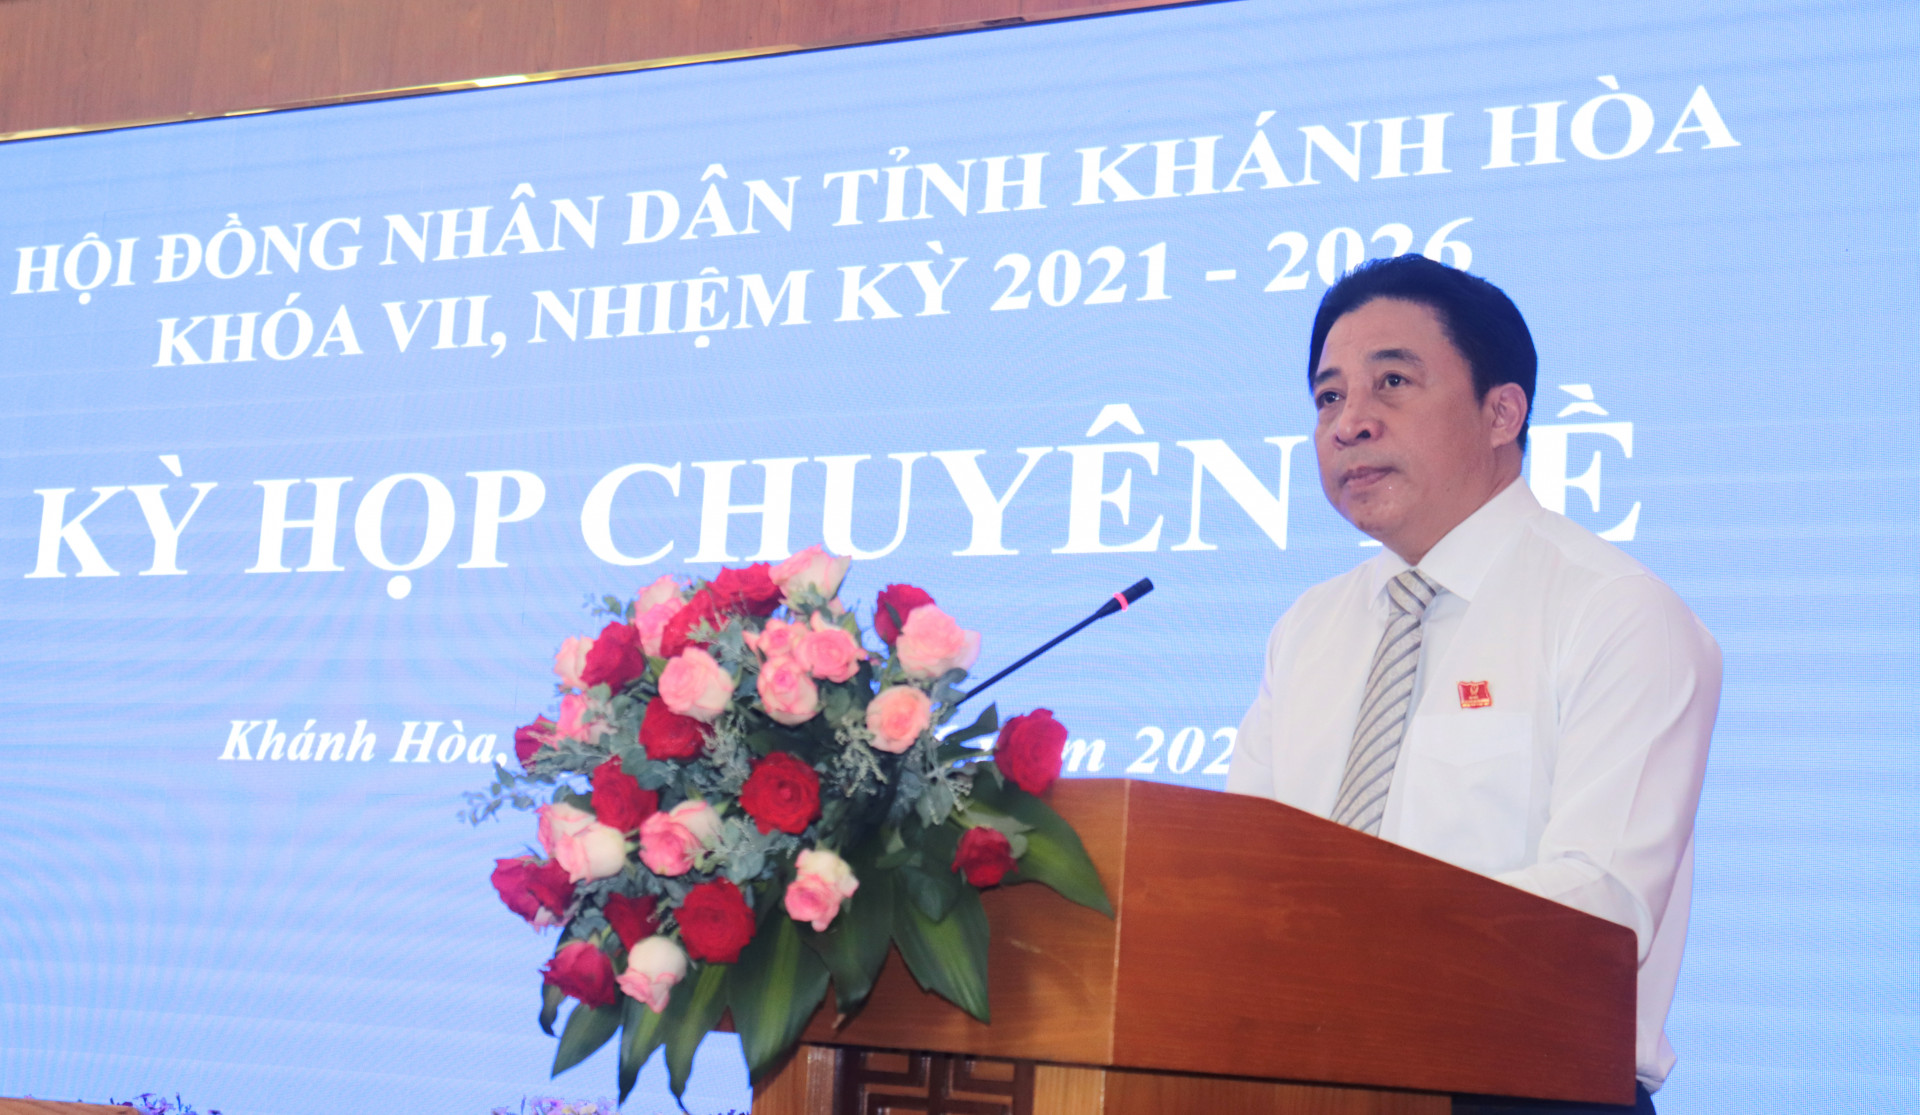 Đồng chí Nguyễn Khắc Toàn phát biểu khai mạc kỳ họp